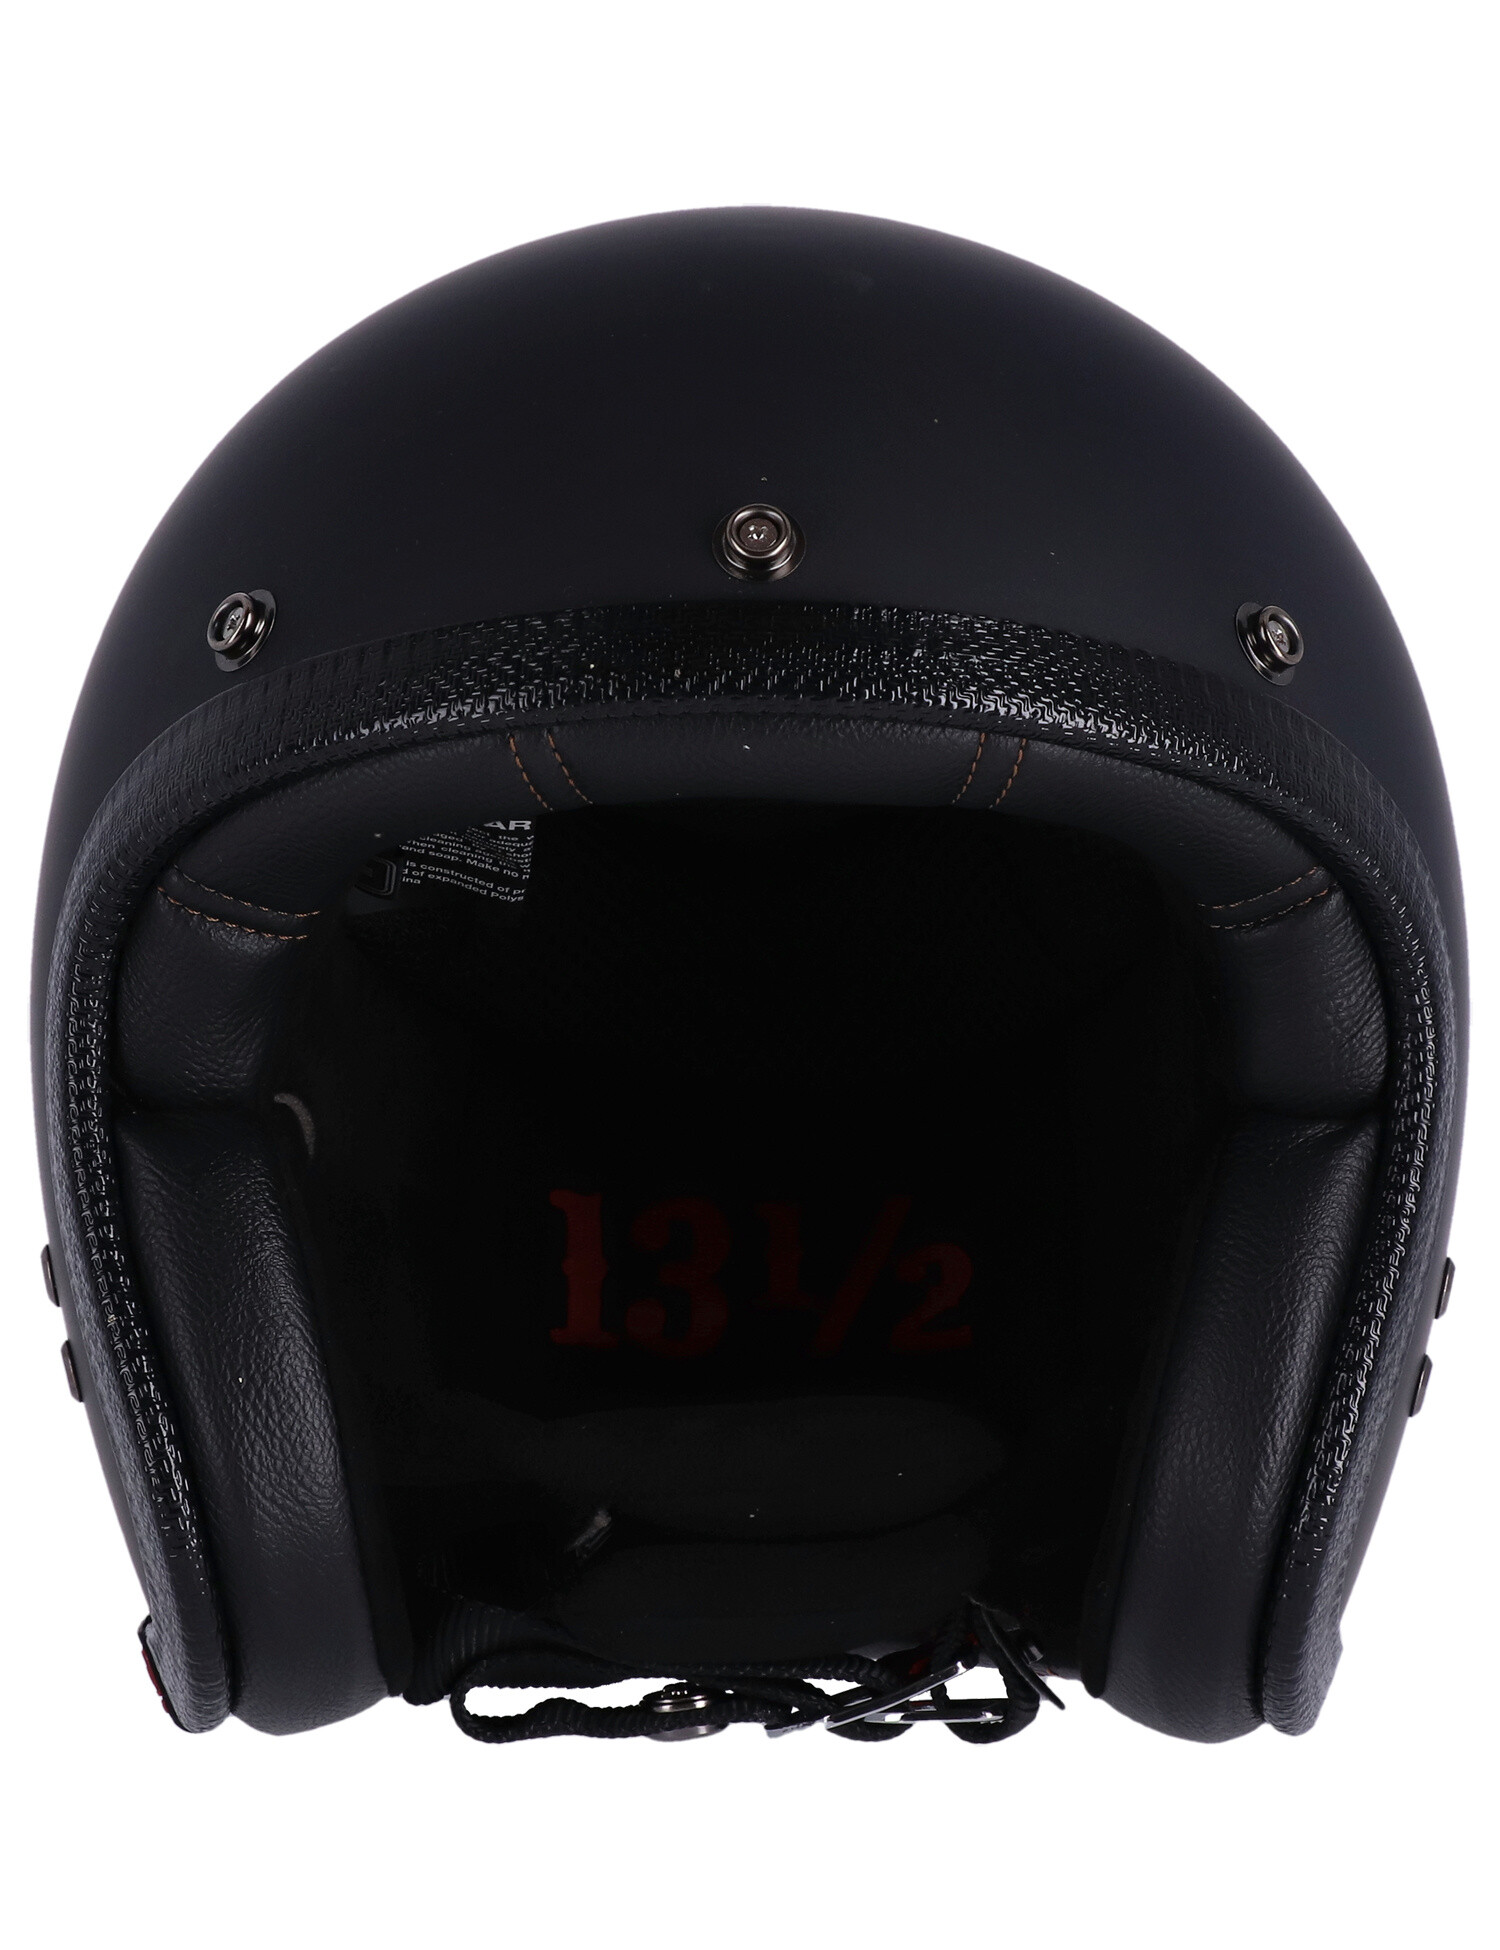 13 and a half Skull bucket helmet matte black